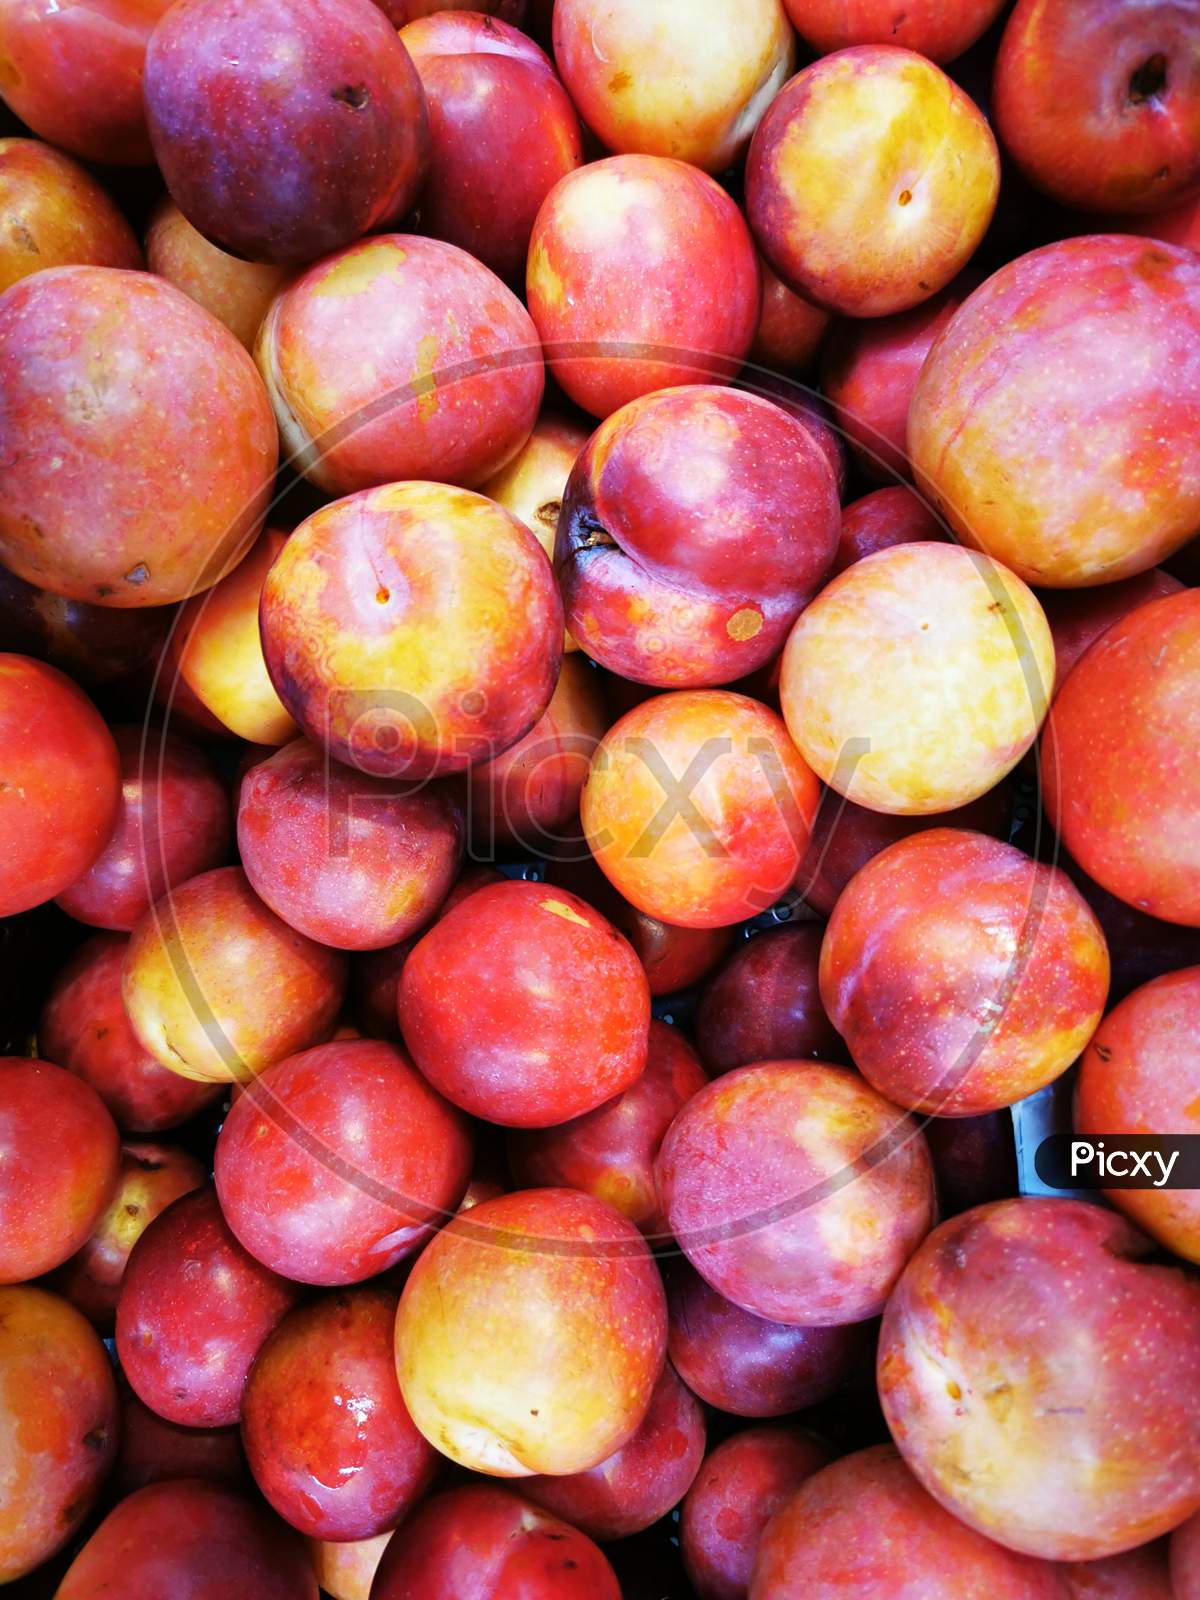 A plum is a fruit of the subgenus Prunus of the genus Prunus.